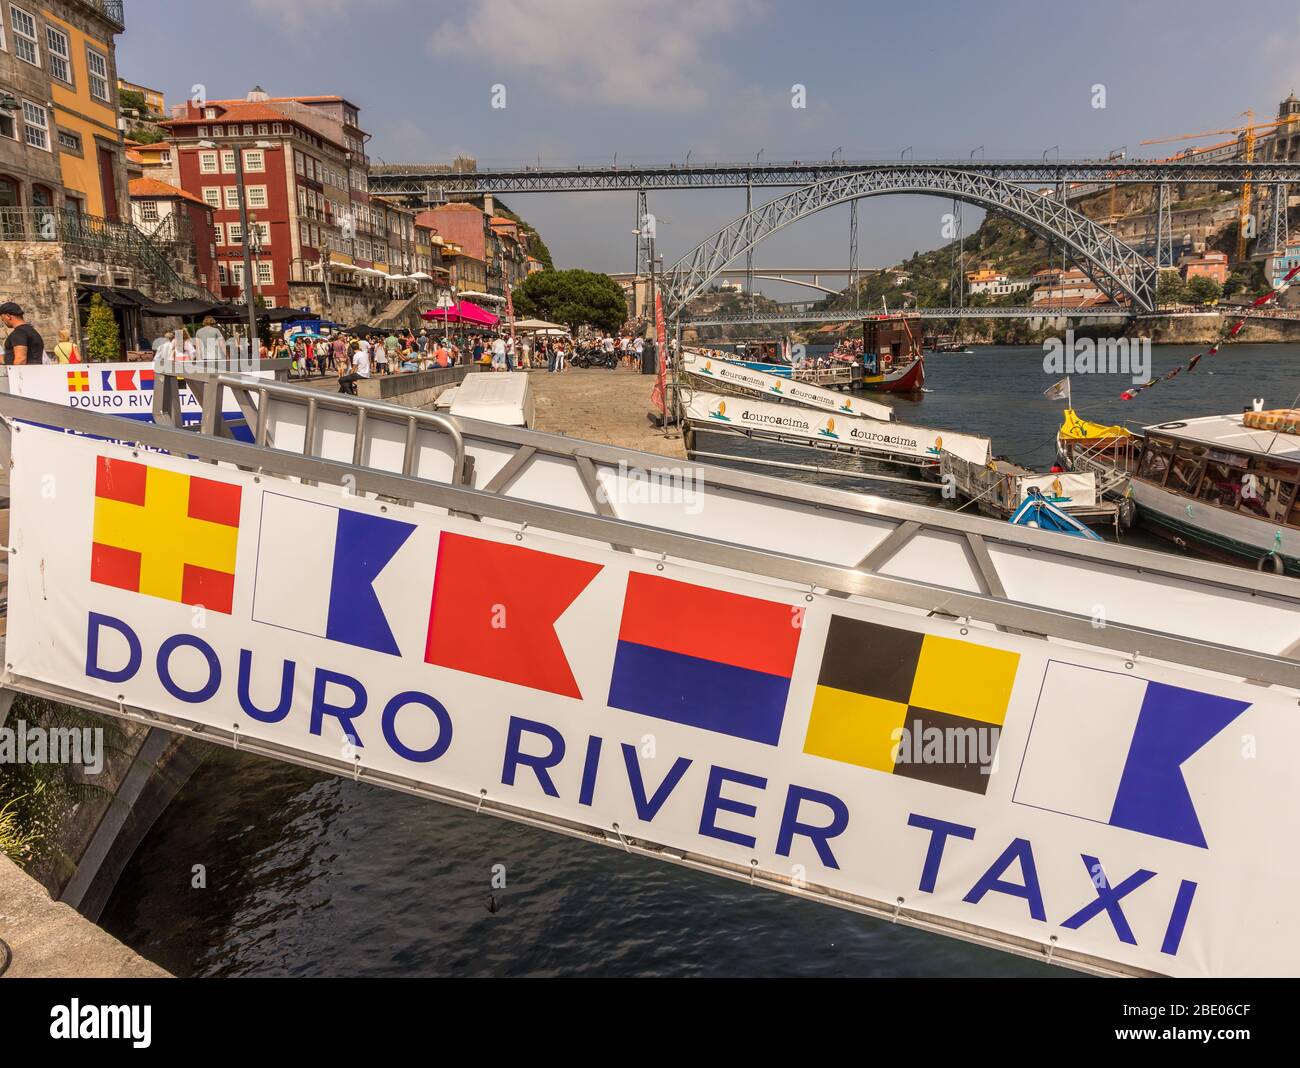 Douro River Taxi Laderampe und Dock mit nautischen Flaggen RABELA (Tabelle), der Fluss und die Brücke in Porto im Hintergrund, Portugal Stockfoto